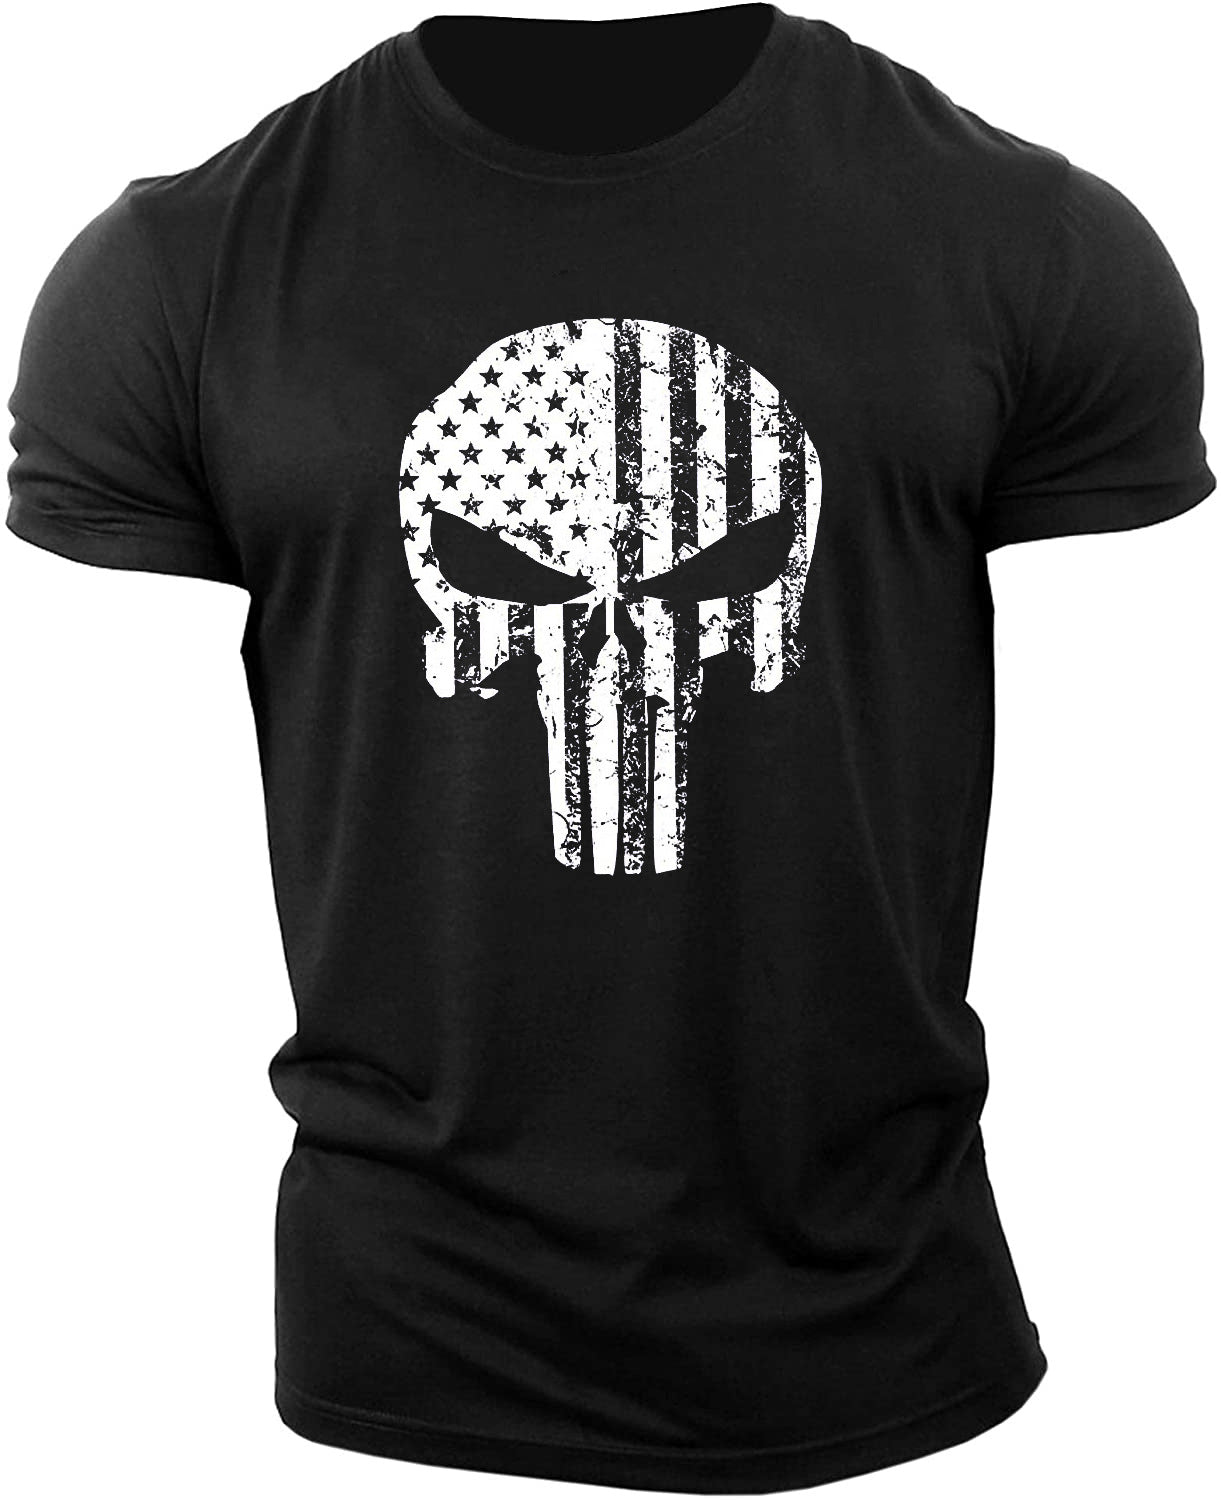 Men's Skull Workout Muscle T-shirt